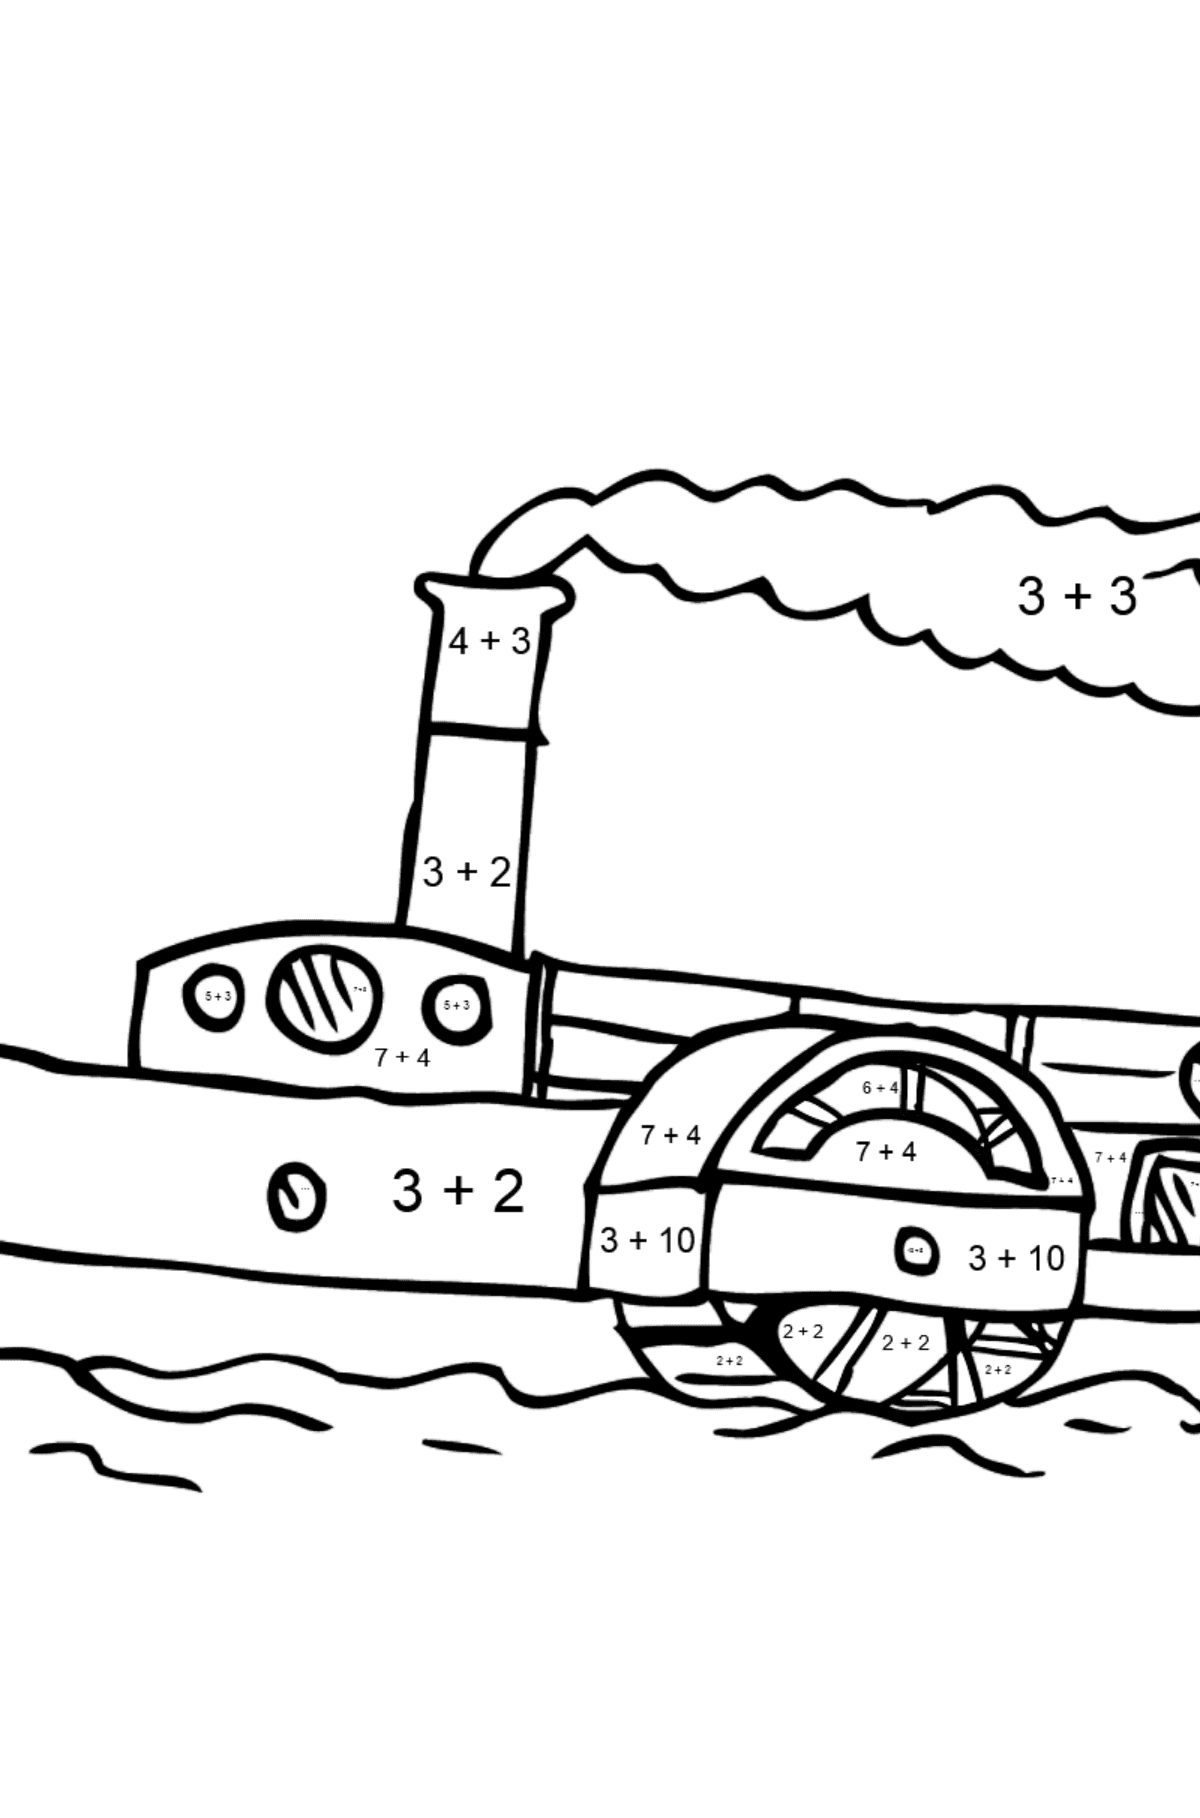 Ausmalbild - Ein Schiff mit einem Schaufelrad - Mathe Ausmalbilder - Addition für Kinder